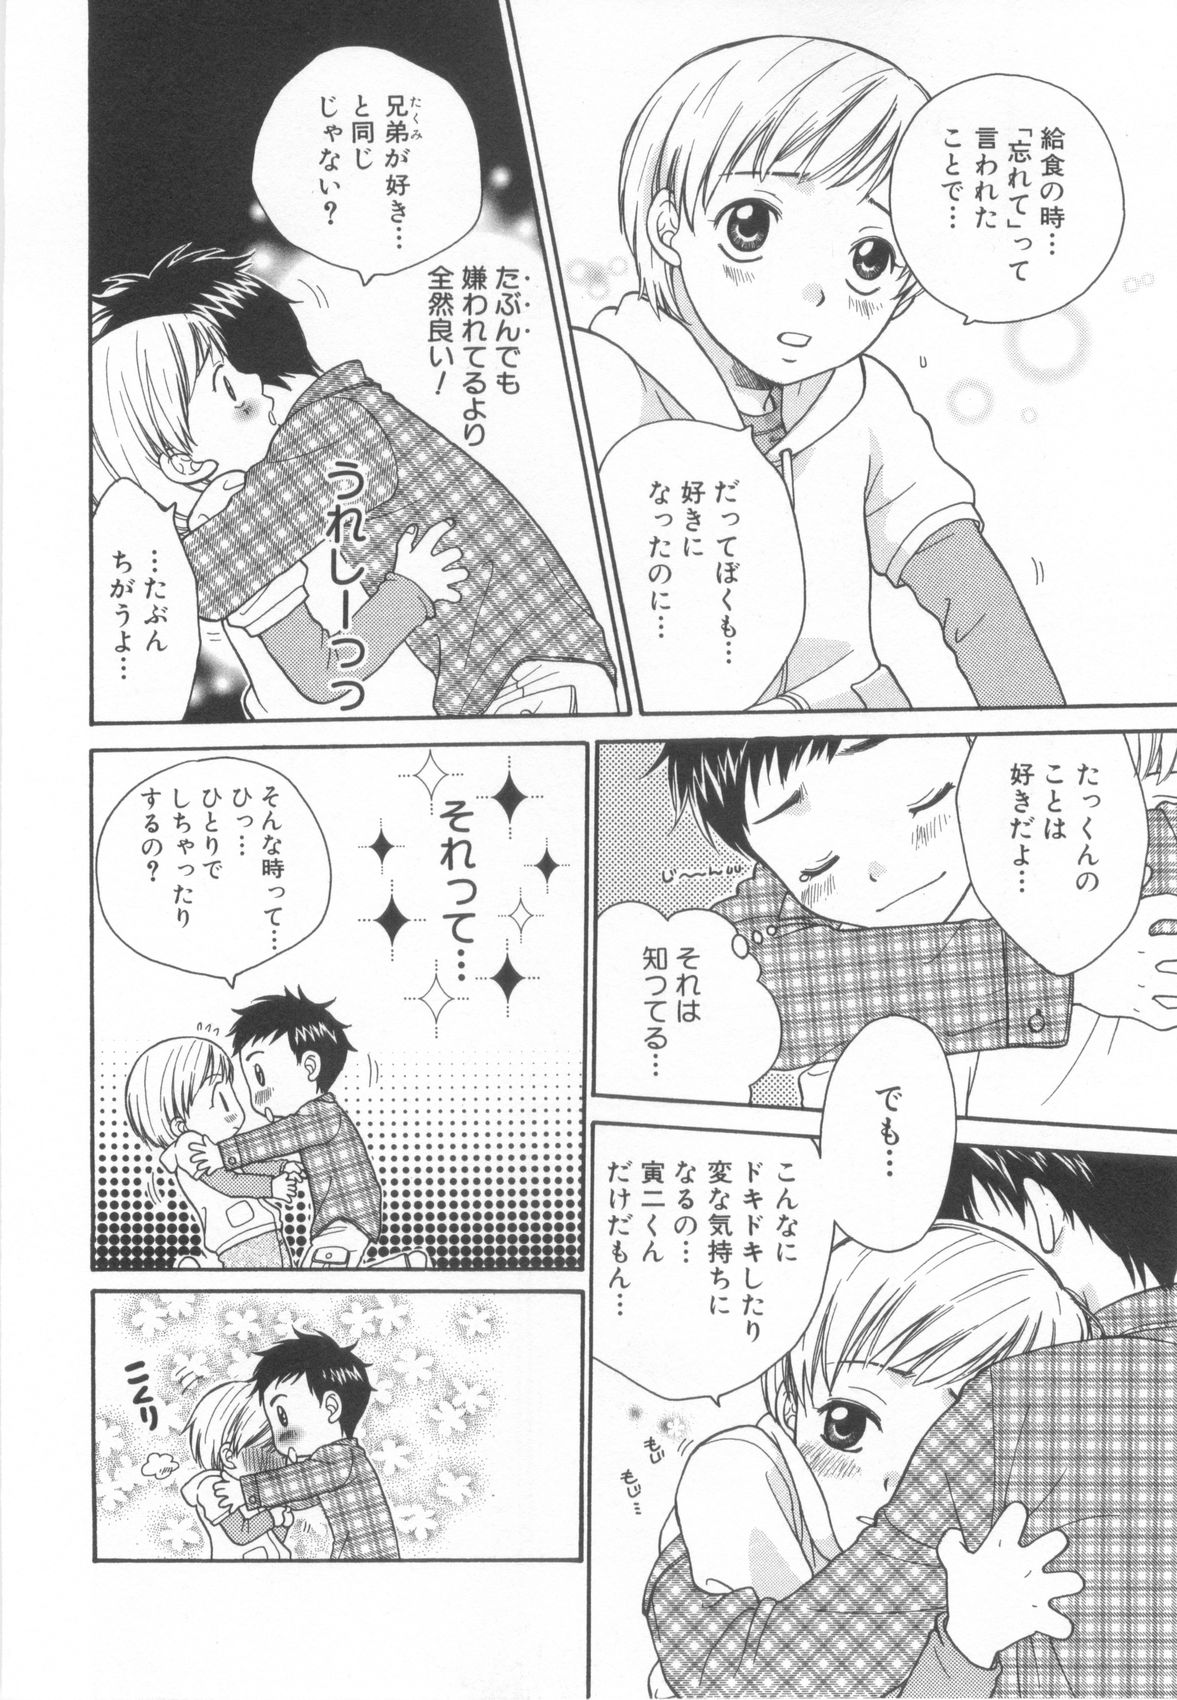 [Anthology] Shota Tama Vol. 2 page 26 full